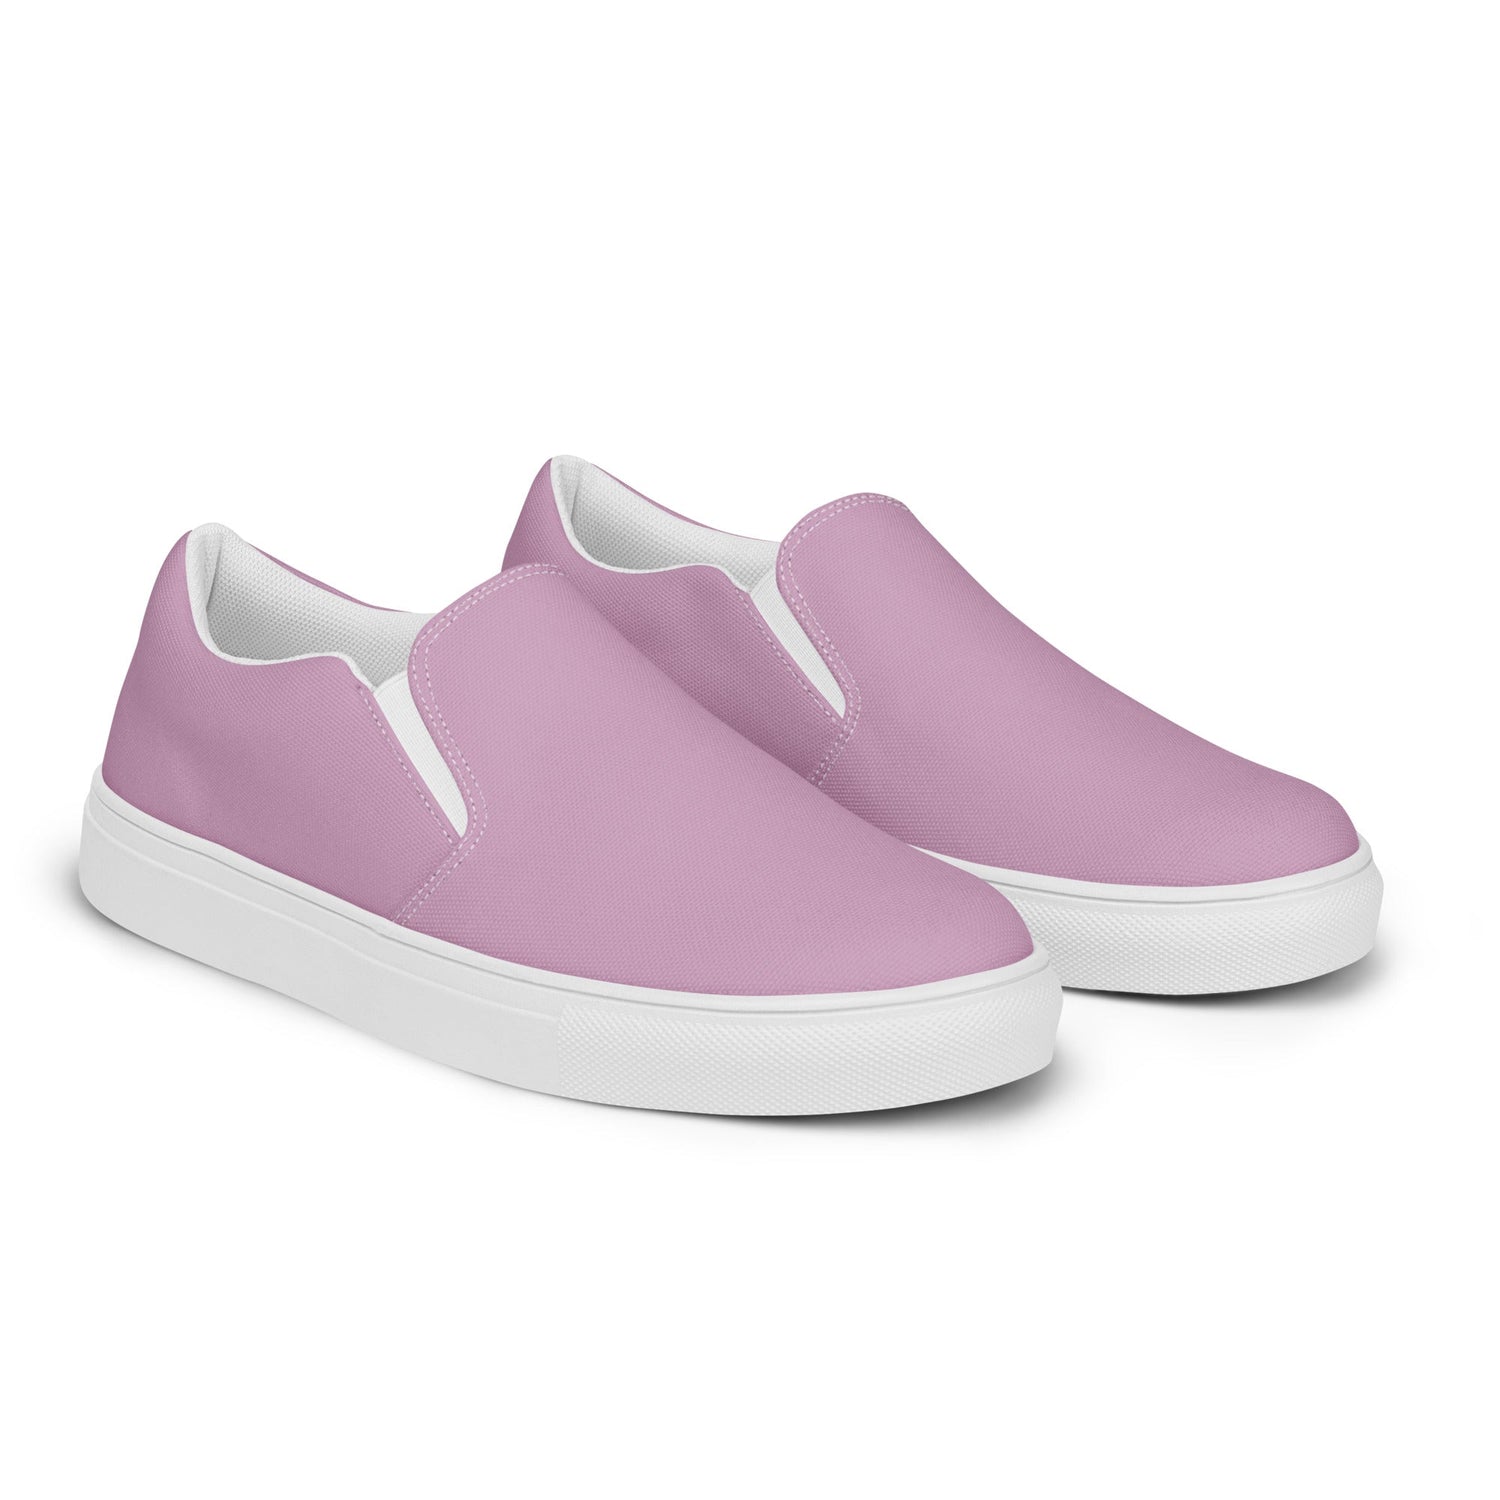 klasneakers Women’s slip-on canvas shoes - Faded Bubblegum